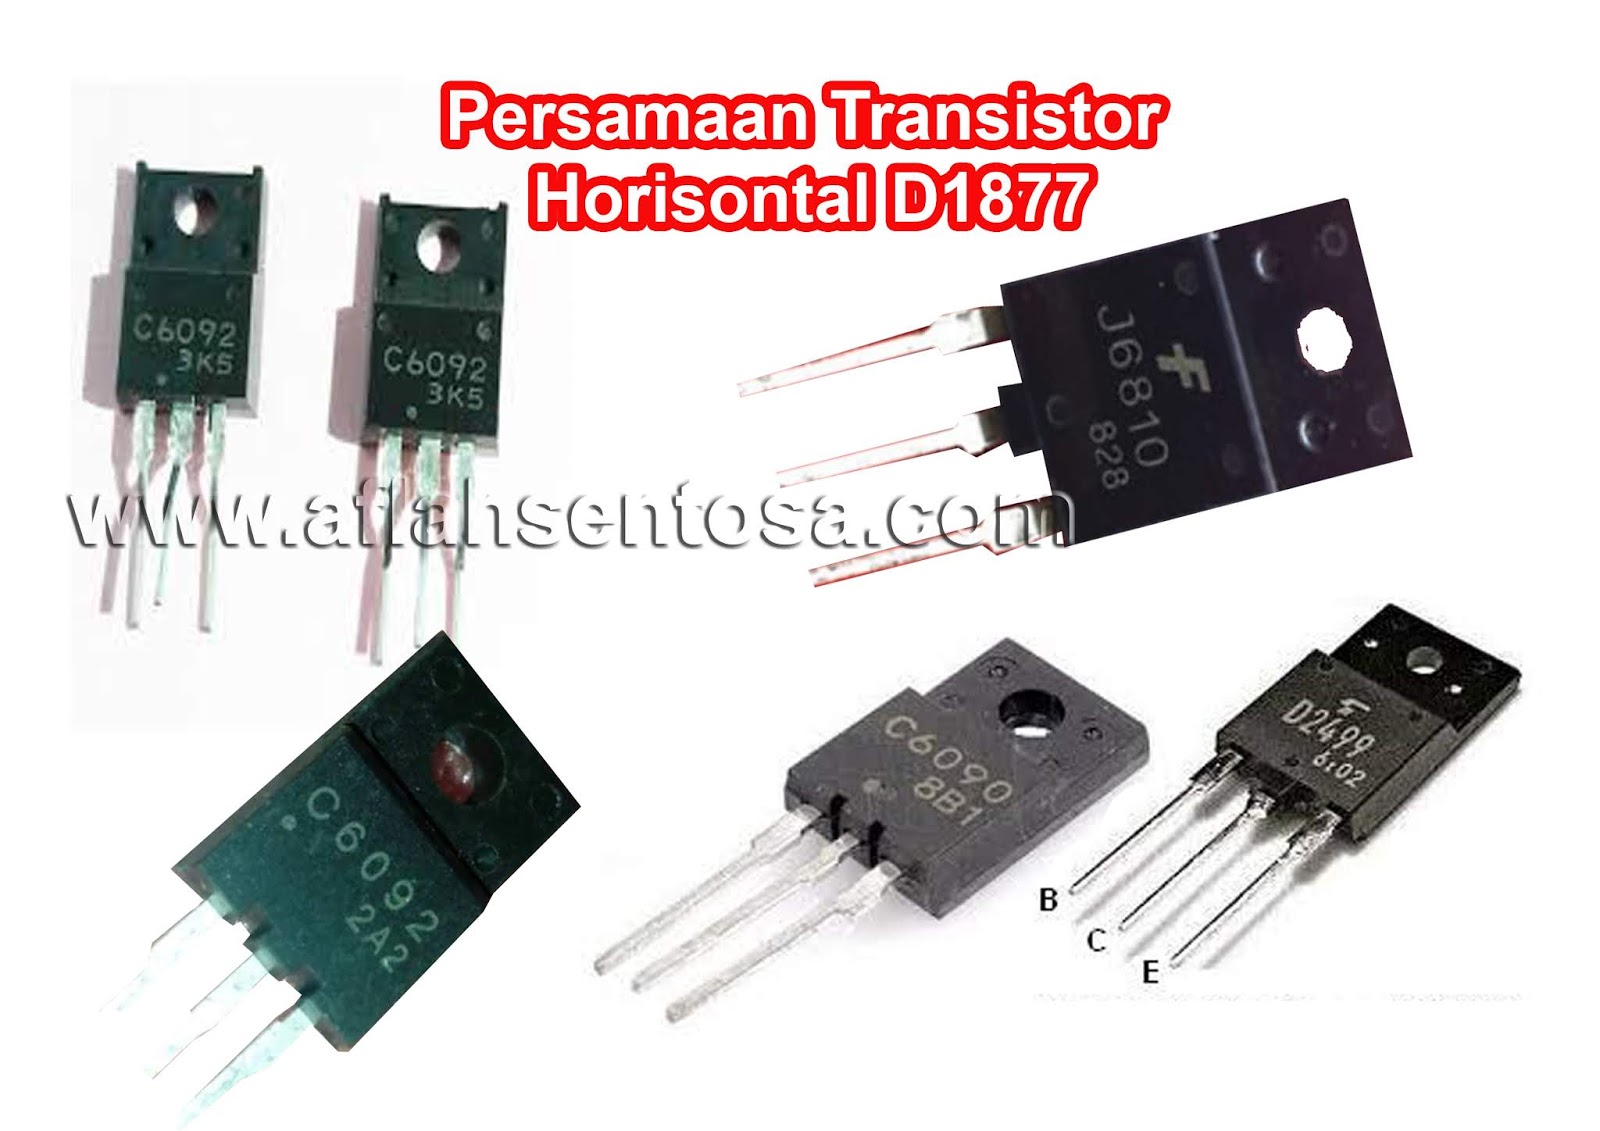 Persamaan Transistor Horisontal D1877 Aflah Sentosa